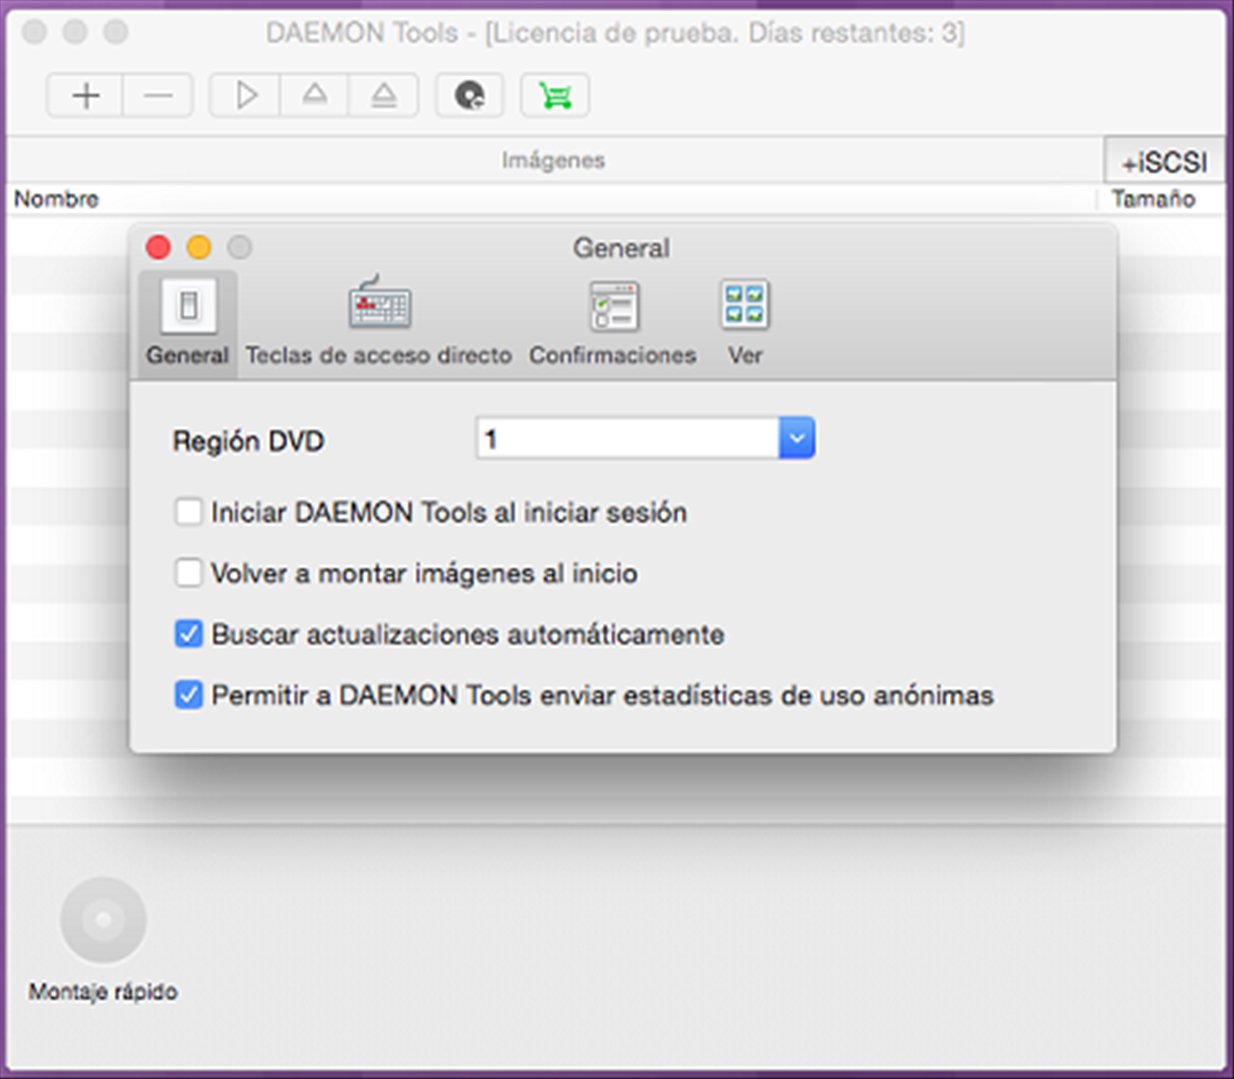 Daemon tools lite free download for mac